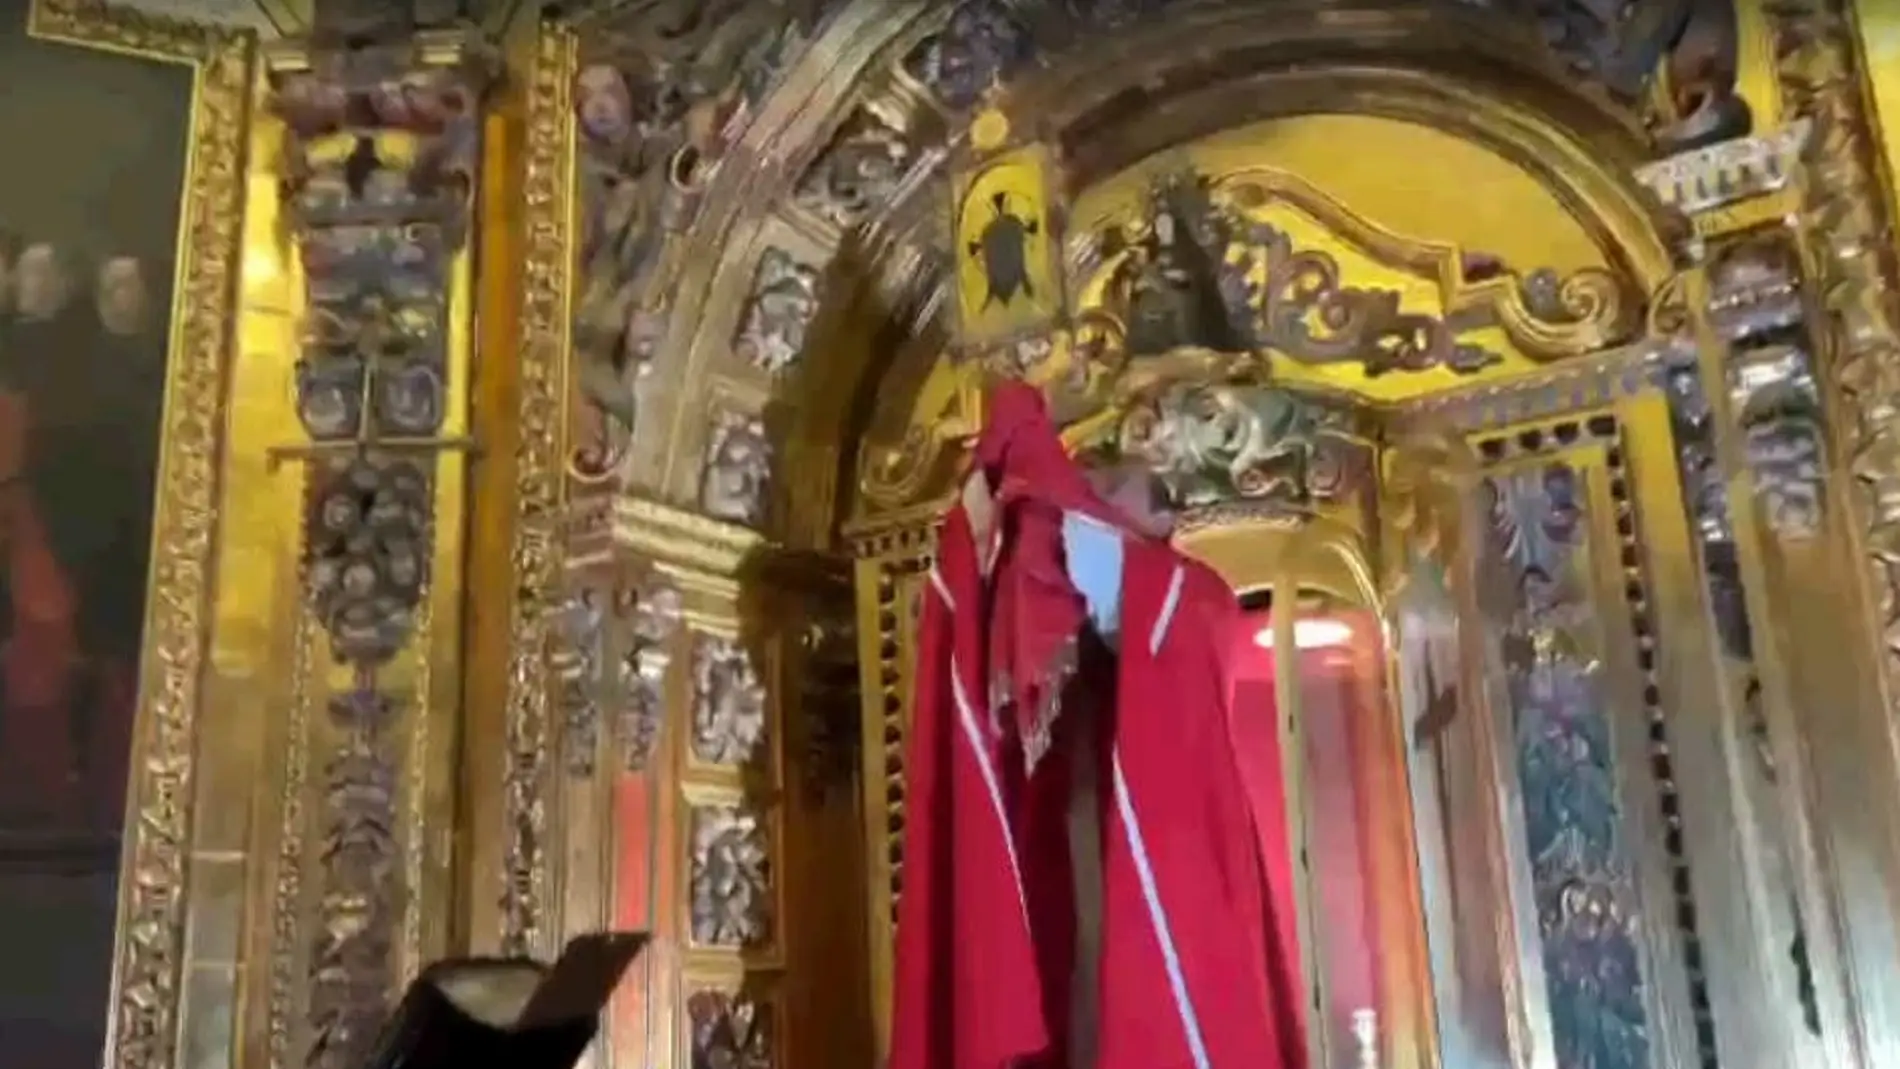 El obispo de la Diócesis, José Ignacio Munilla, exhibe la reliquia 